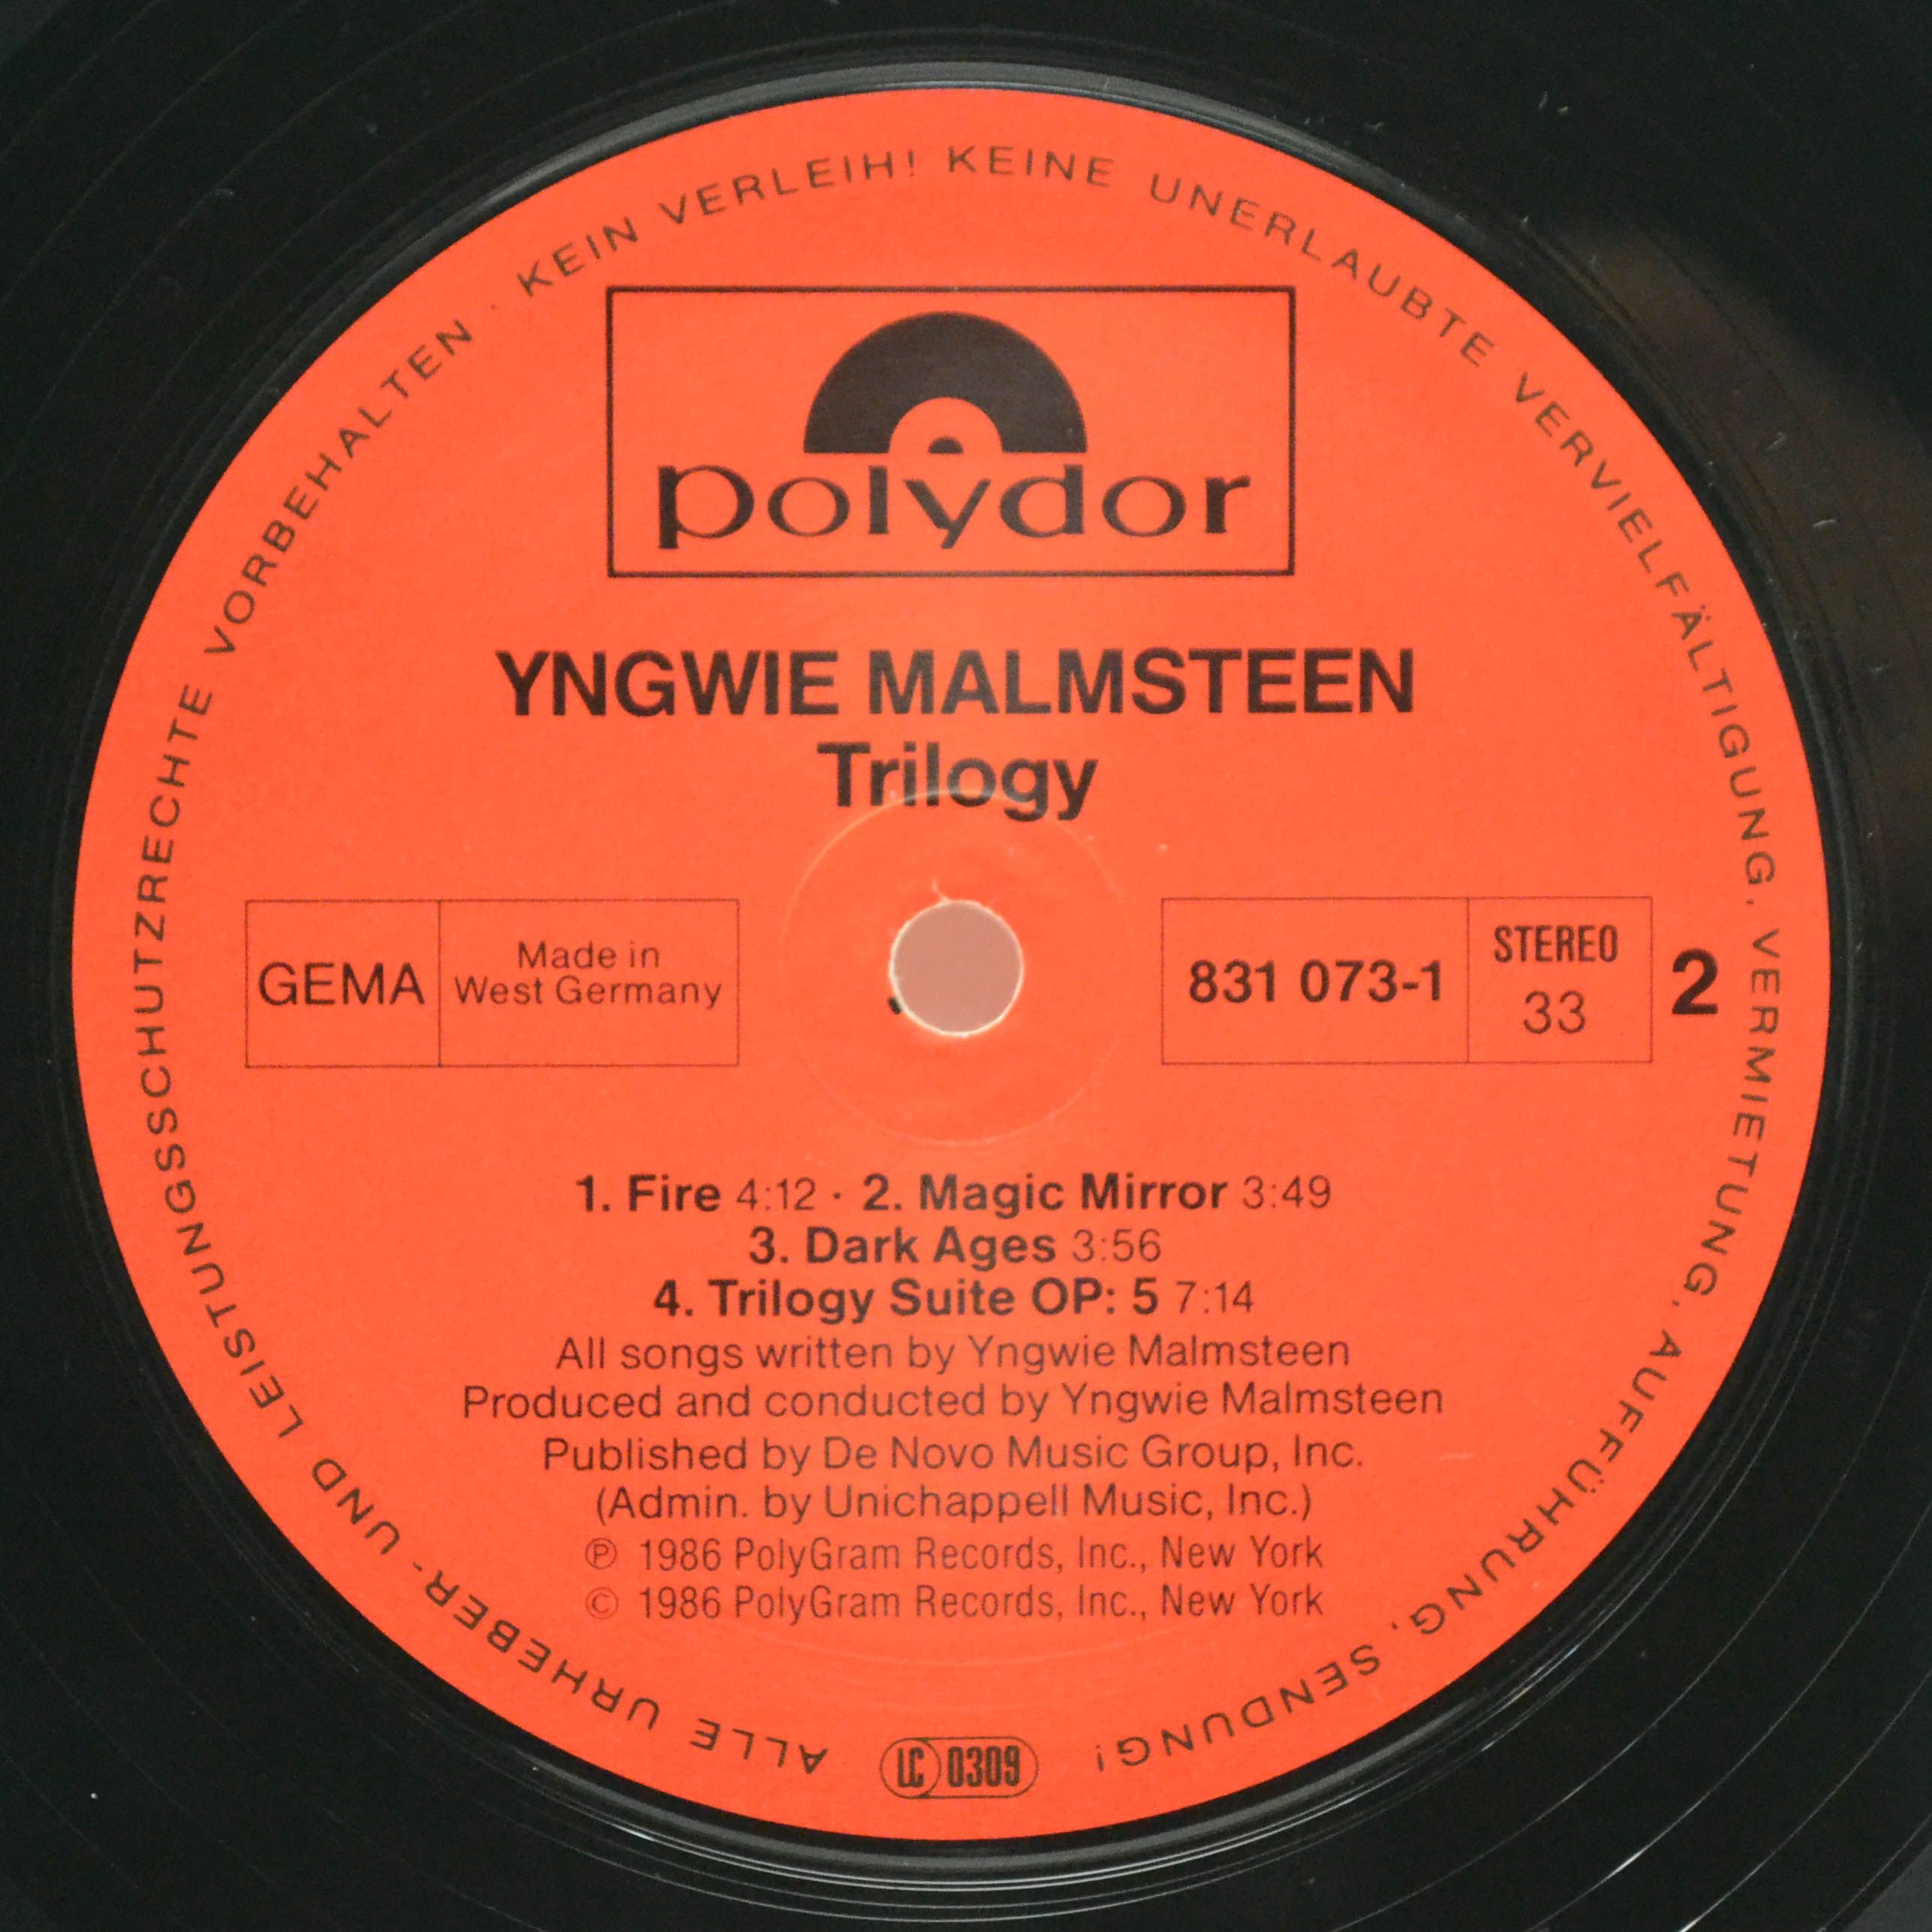 Yngwie J. Malmsteen — Trilogy, 1986